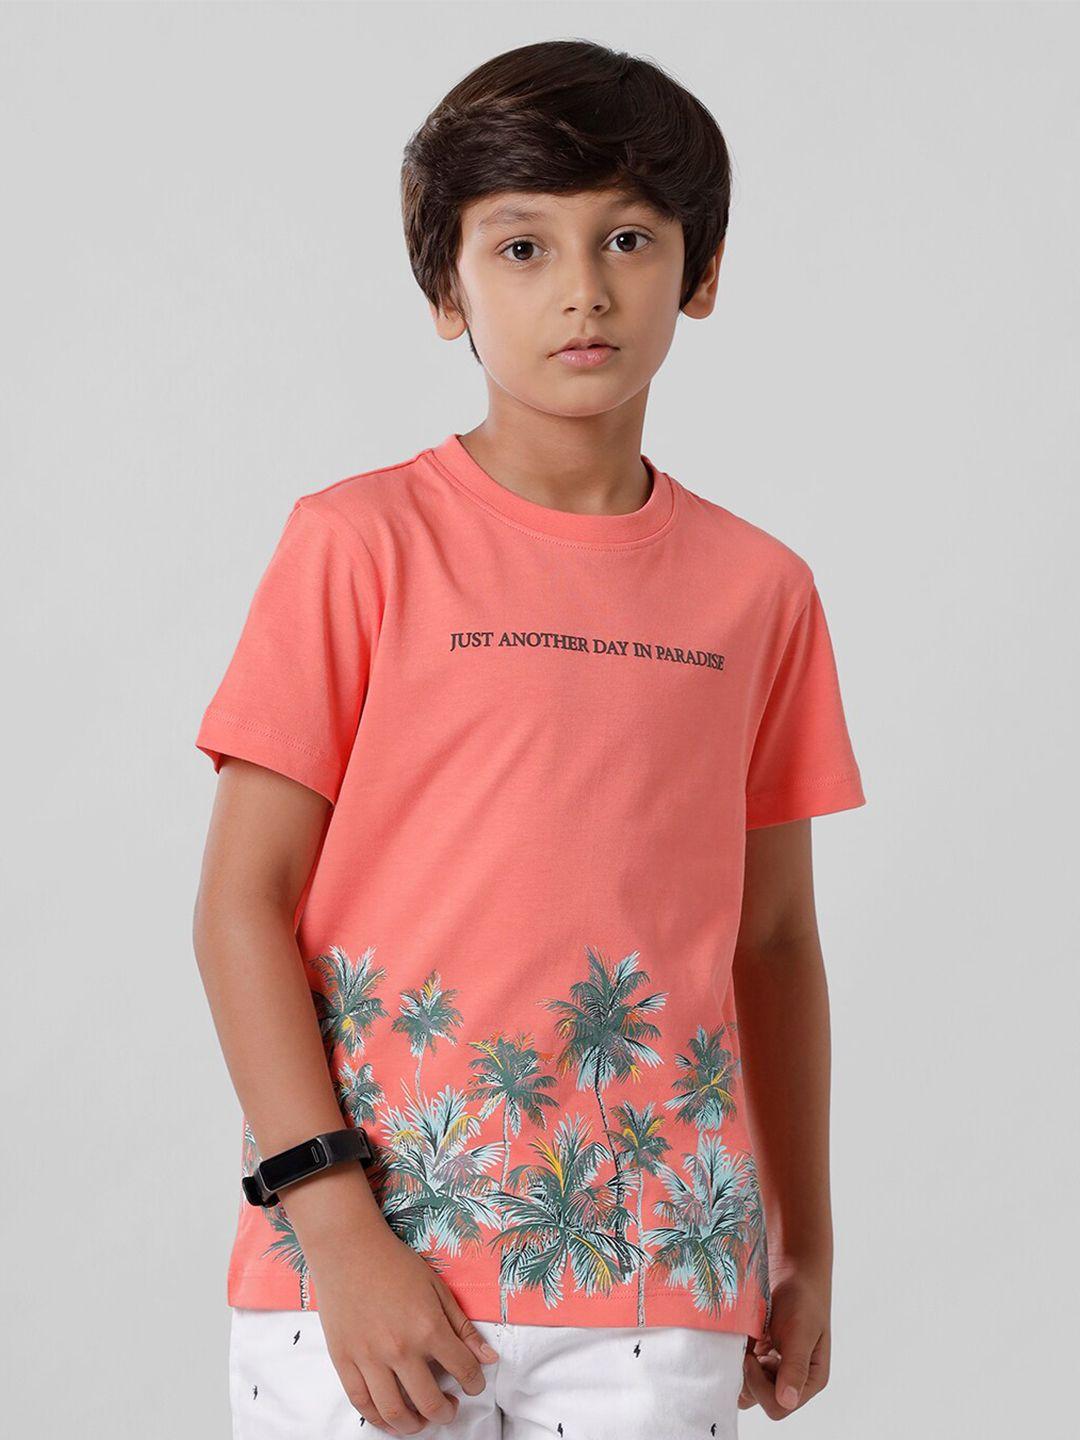 pipin-boys-peach-coloured-floral-printed-tropical-applique-t-shirt